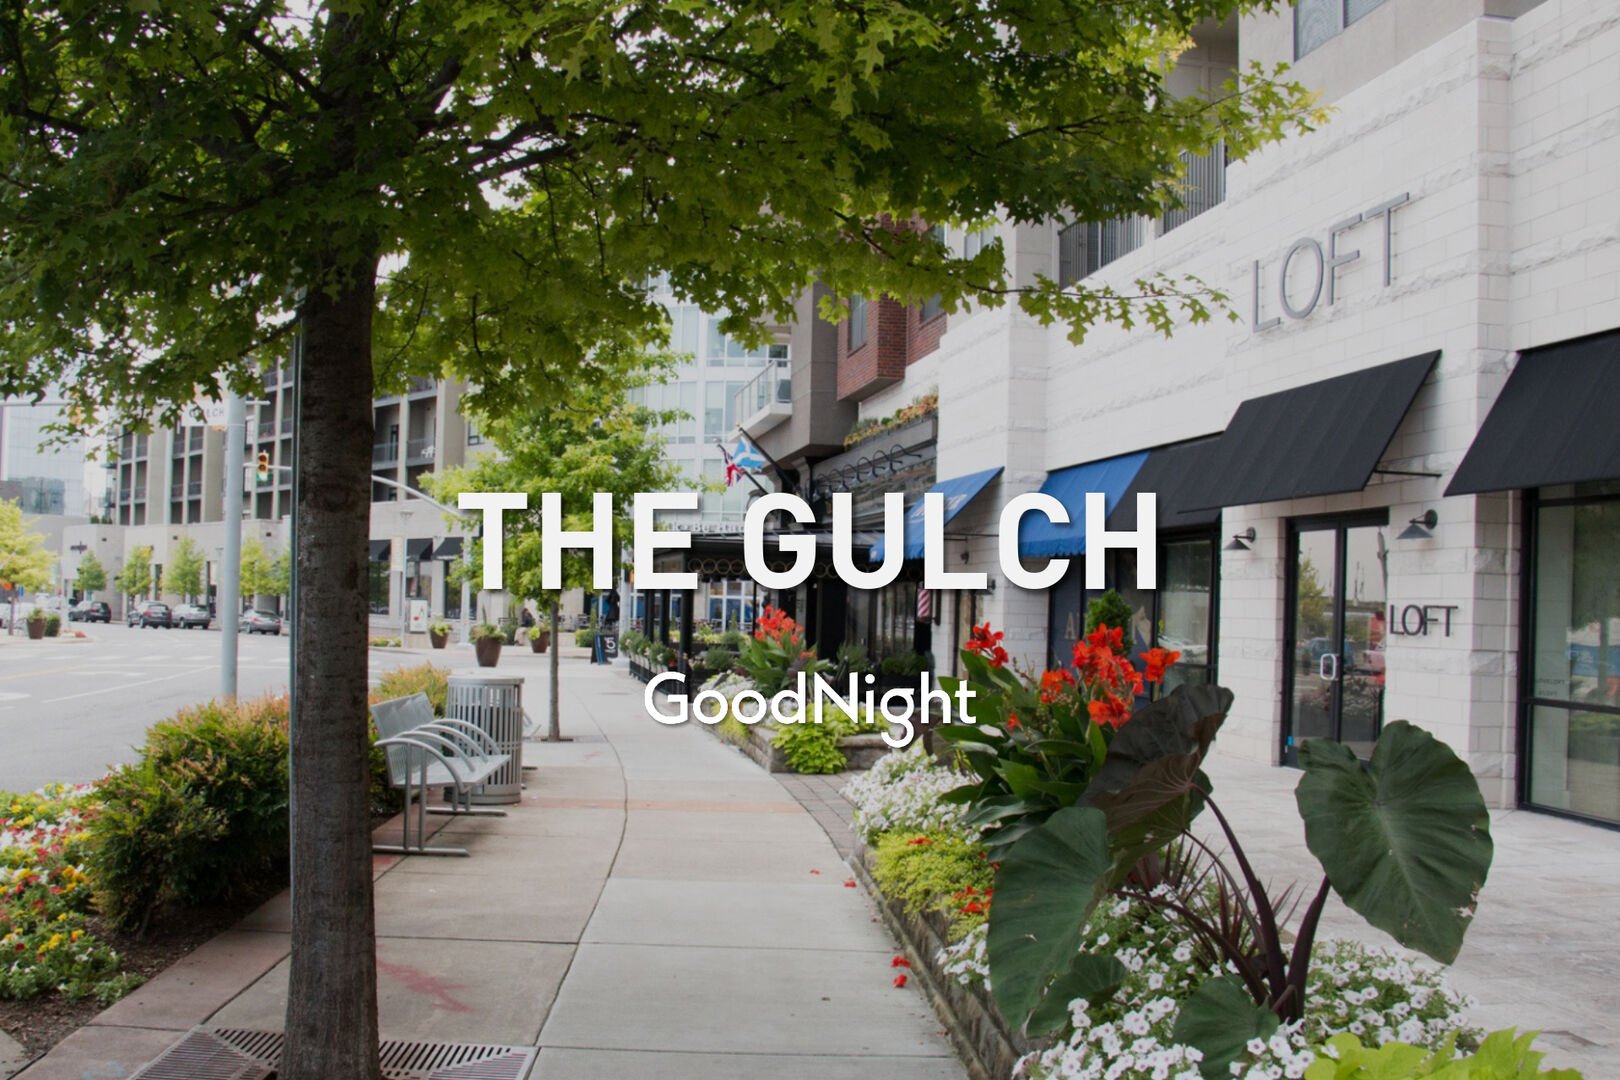 6 min: The Gulch